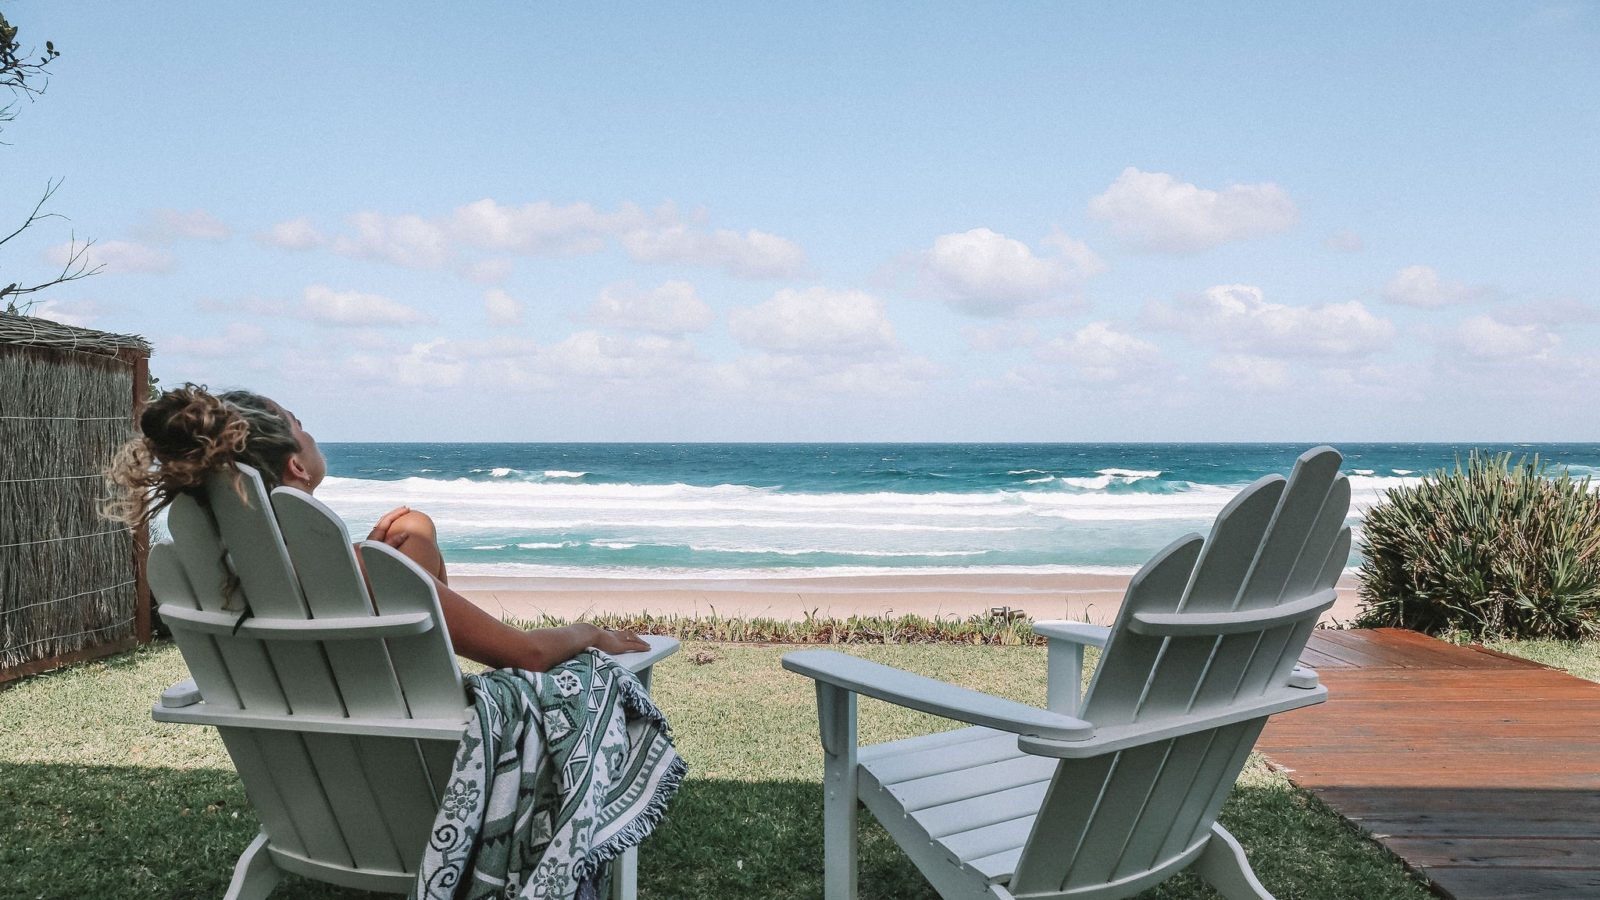 Umi Boomerang Beach lawn chairs with beach view